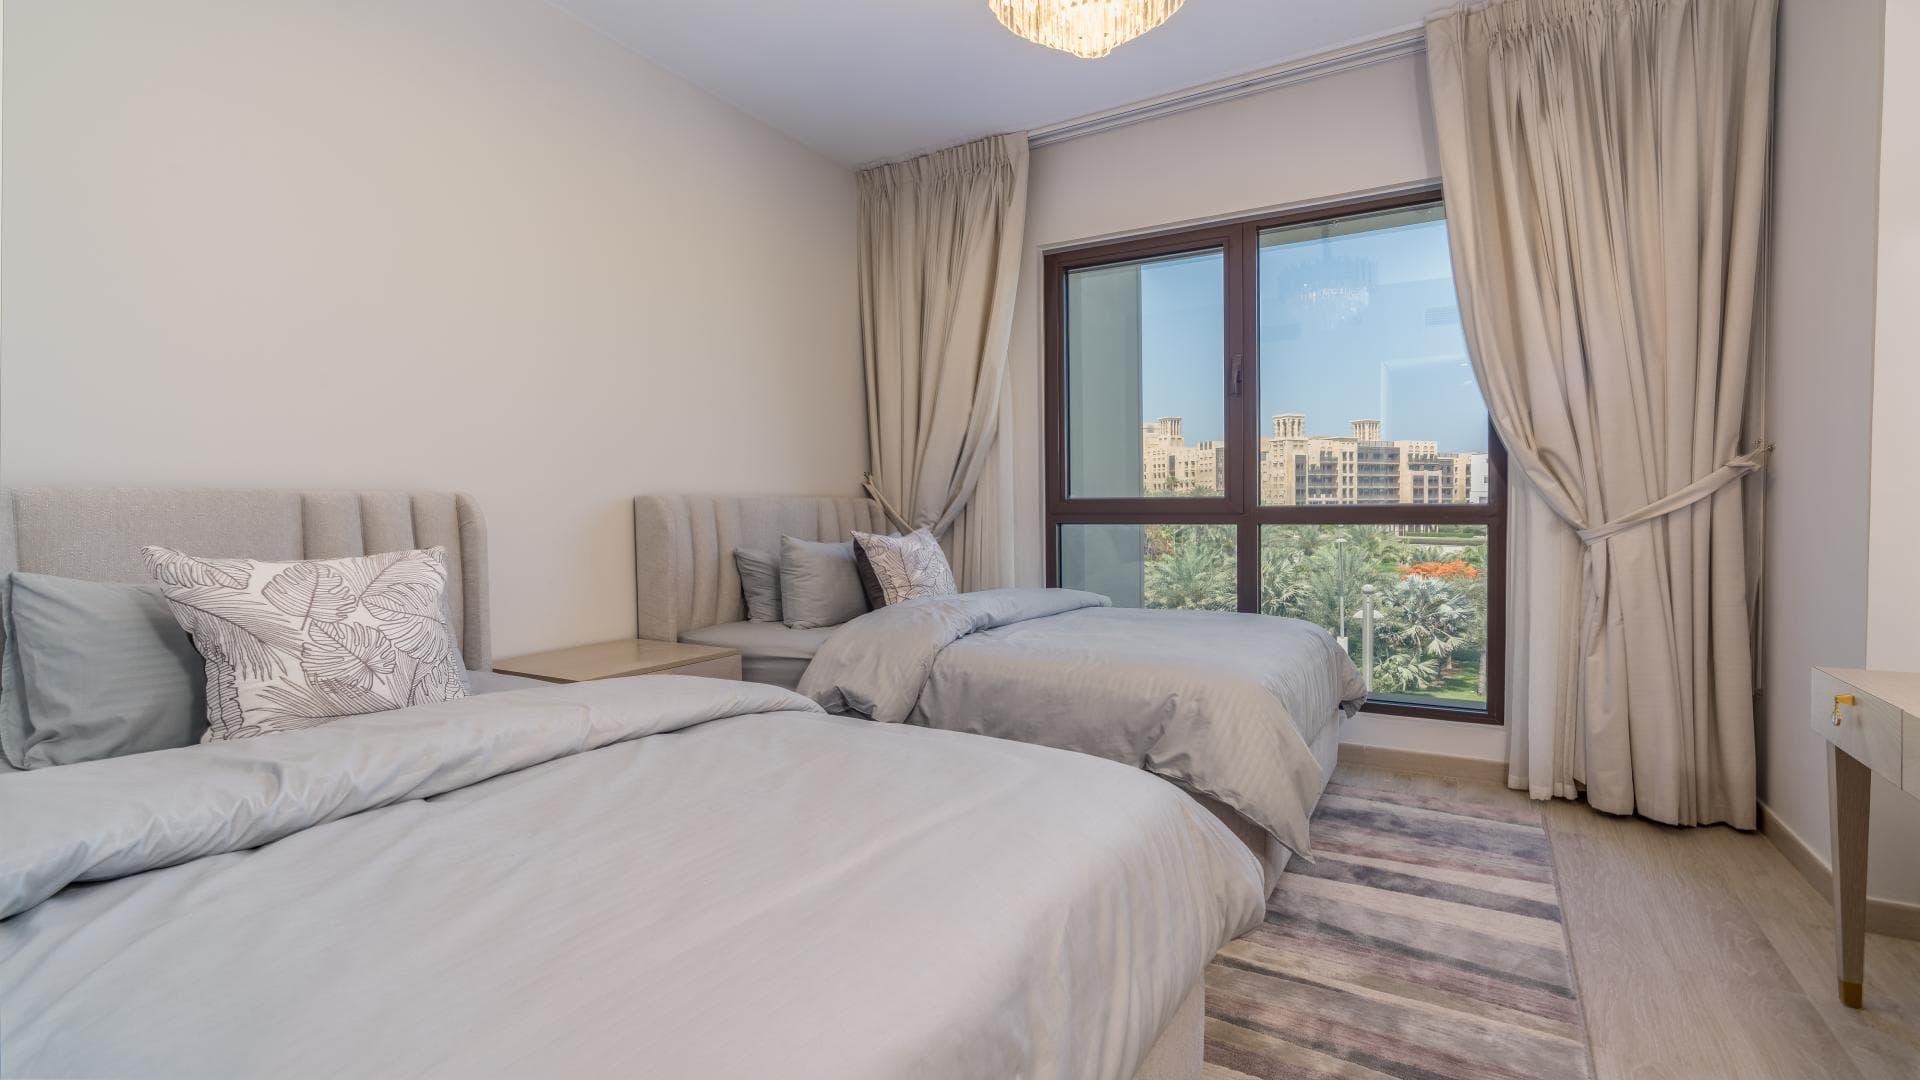 3 Bedroom Apartment For Rent Rahaal Lp36765 21c275ca98e43400.jpg